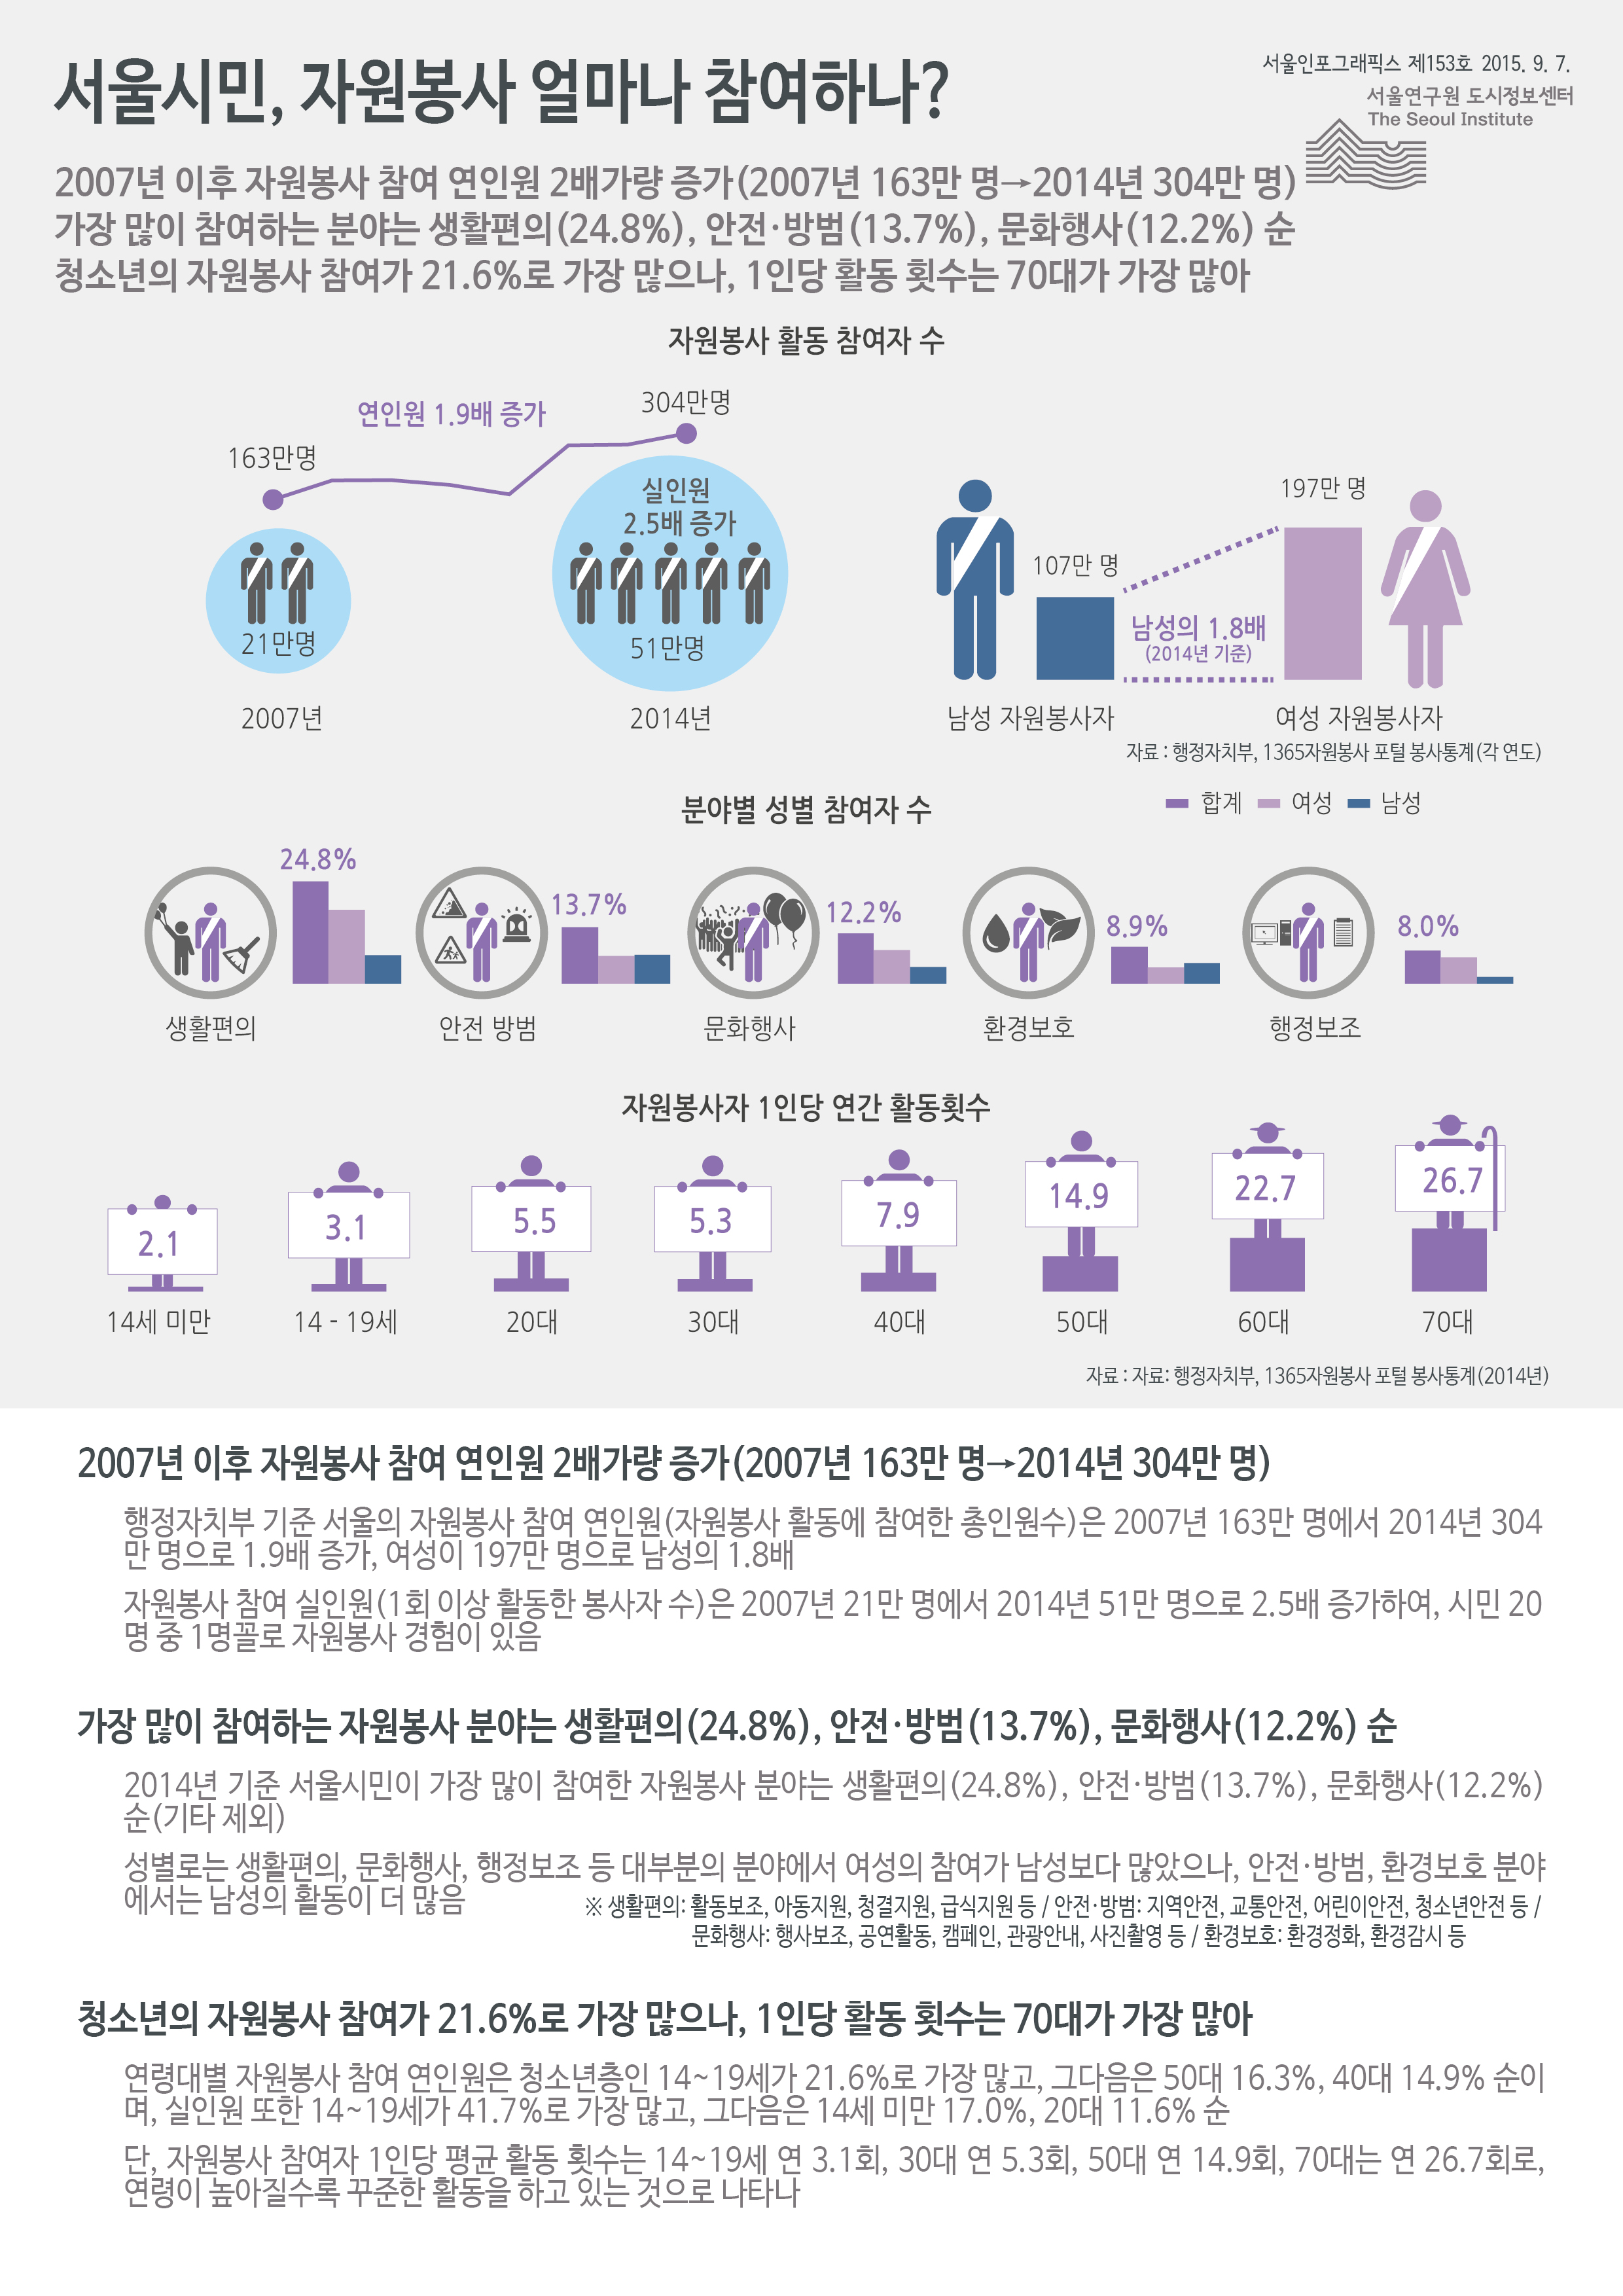 서울시민, 자원봉사 얼마나 참여하나? 서울인포그래픽스 제153호 2015년 9월 7일 2007년 이후 자원봉사 참여 연인원 2배가량 증가(2007년 163만 명→2014년 304만 명. 가장 많이 참여하는 분야는 생활편의(24.8%), 안전·방범(13.7%), 문화행사(12.2%) 순. 청소년의 자원봉사 참여가 21.6%로 가장 많으나, 1인당 활동 횟수는 70대가 가장 많음으로 정리될 수 있습니다. 인포그래픽으로 제공되는 그래픽은 하단에 표로 자세히 제공됩니다.